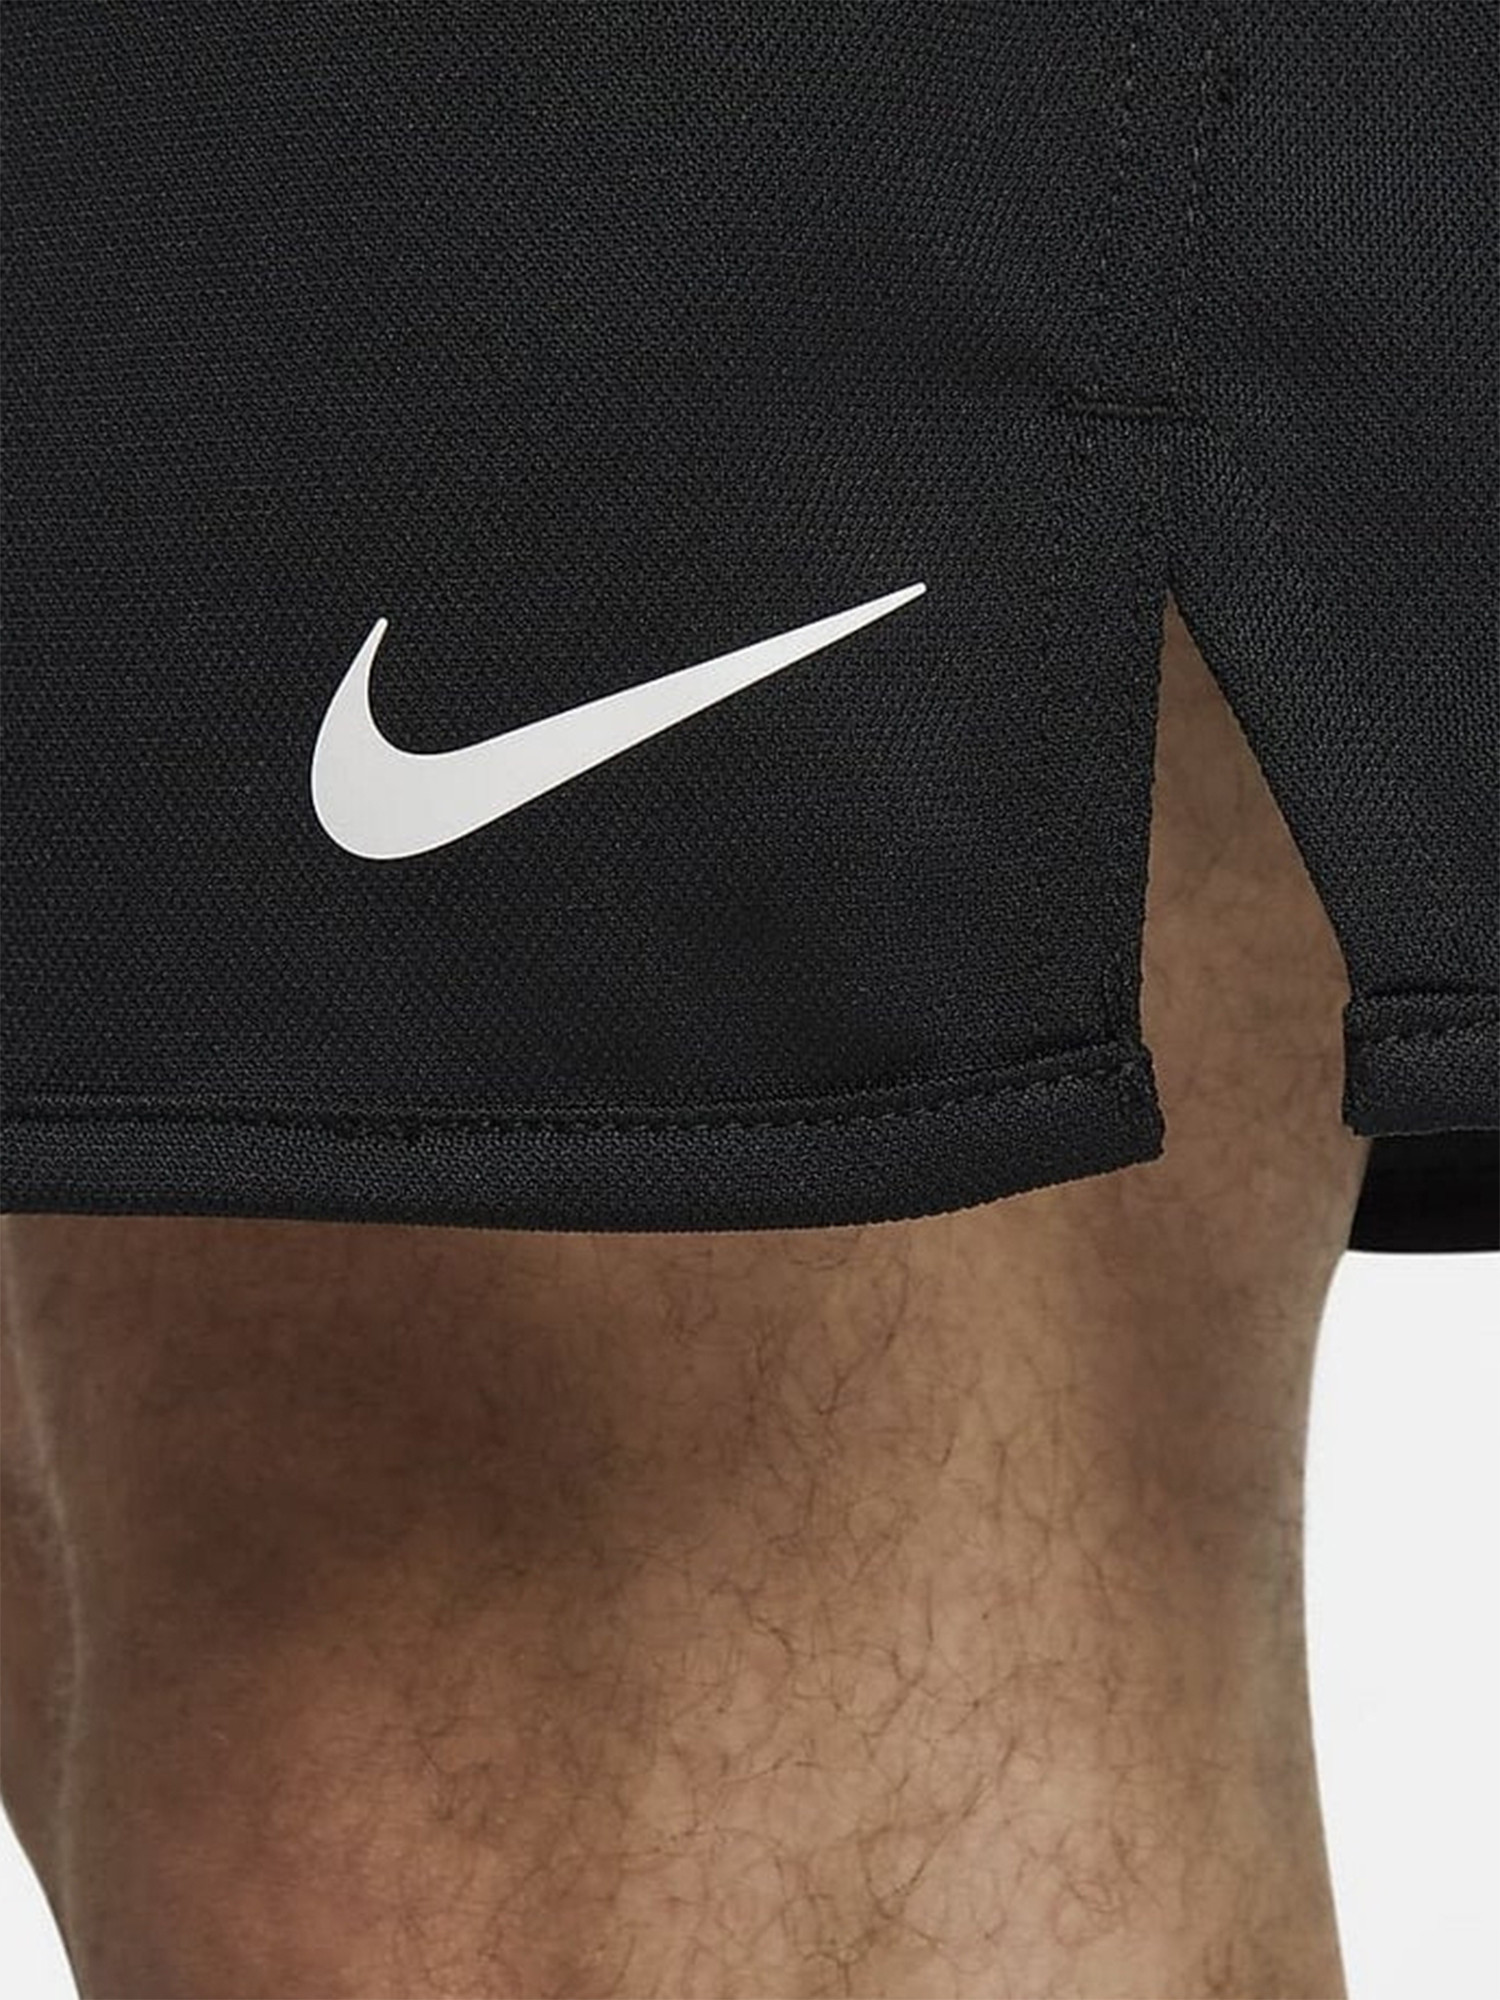 Шорты мужские Nike